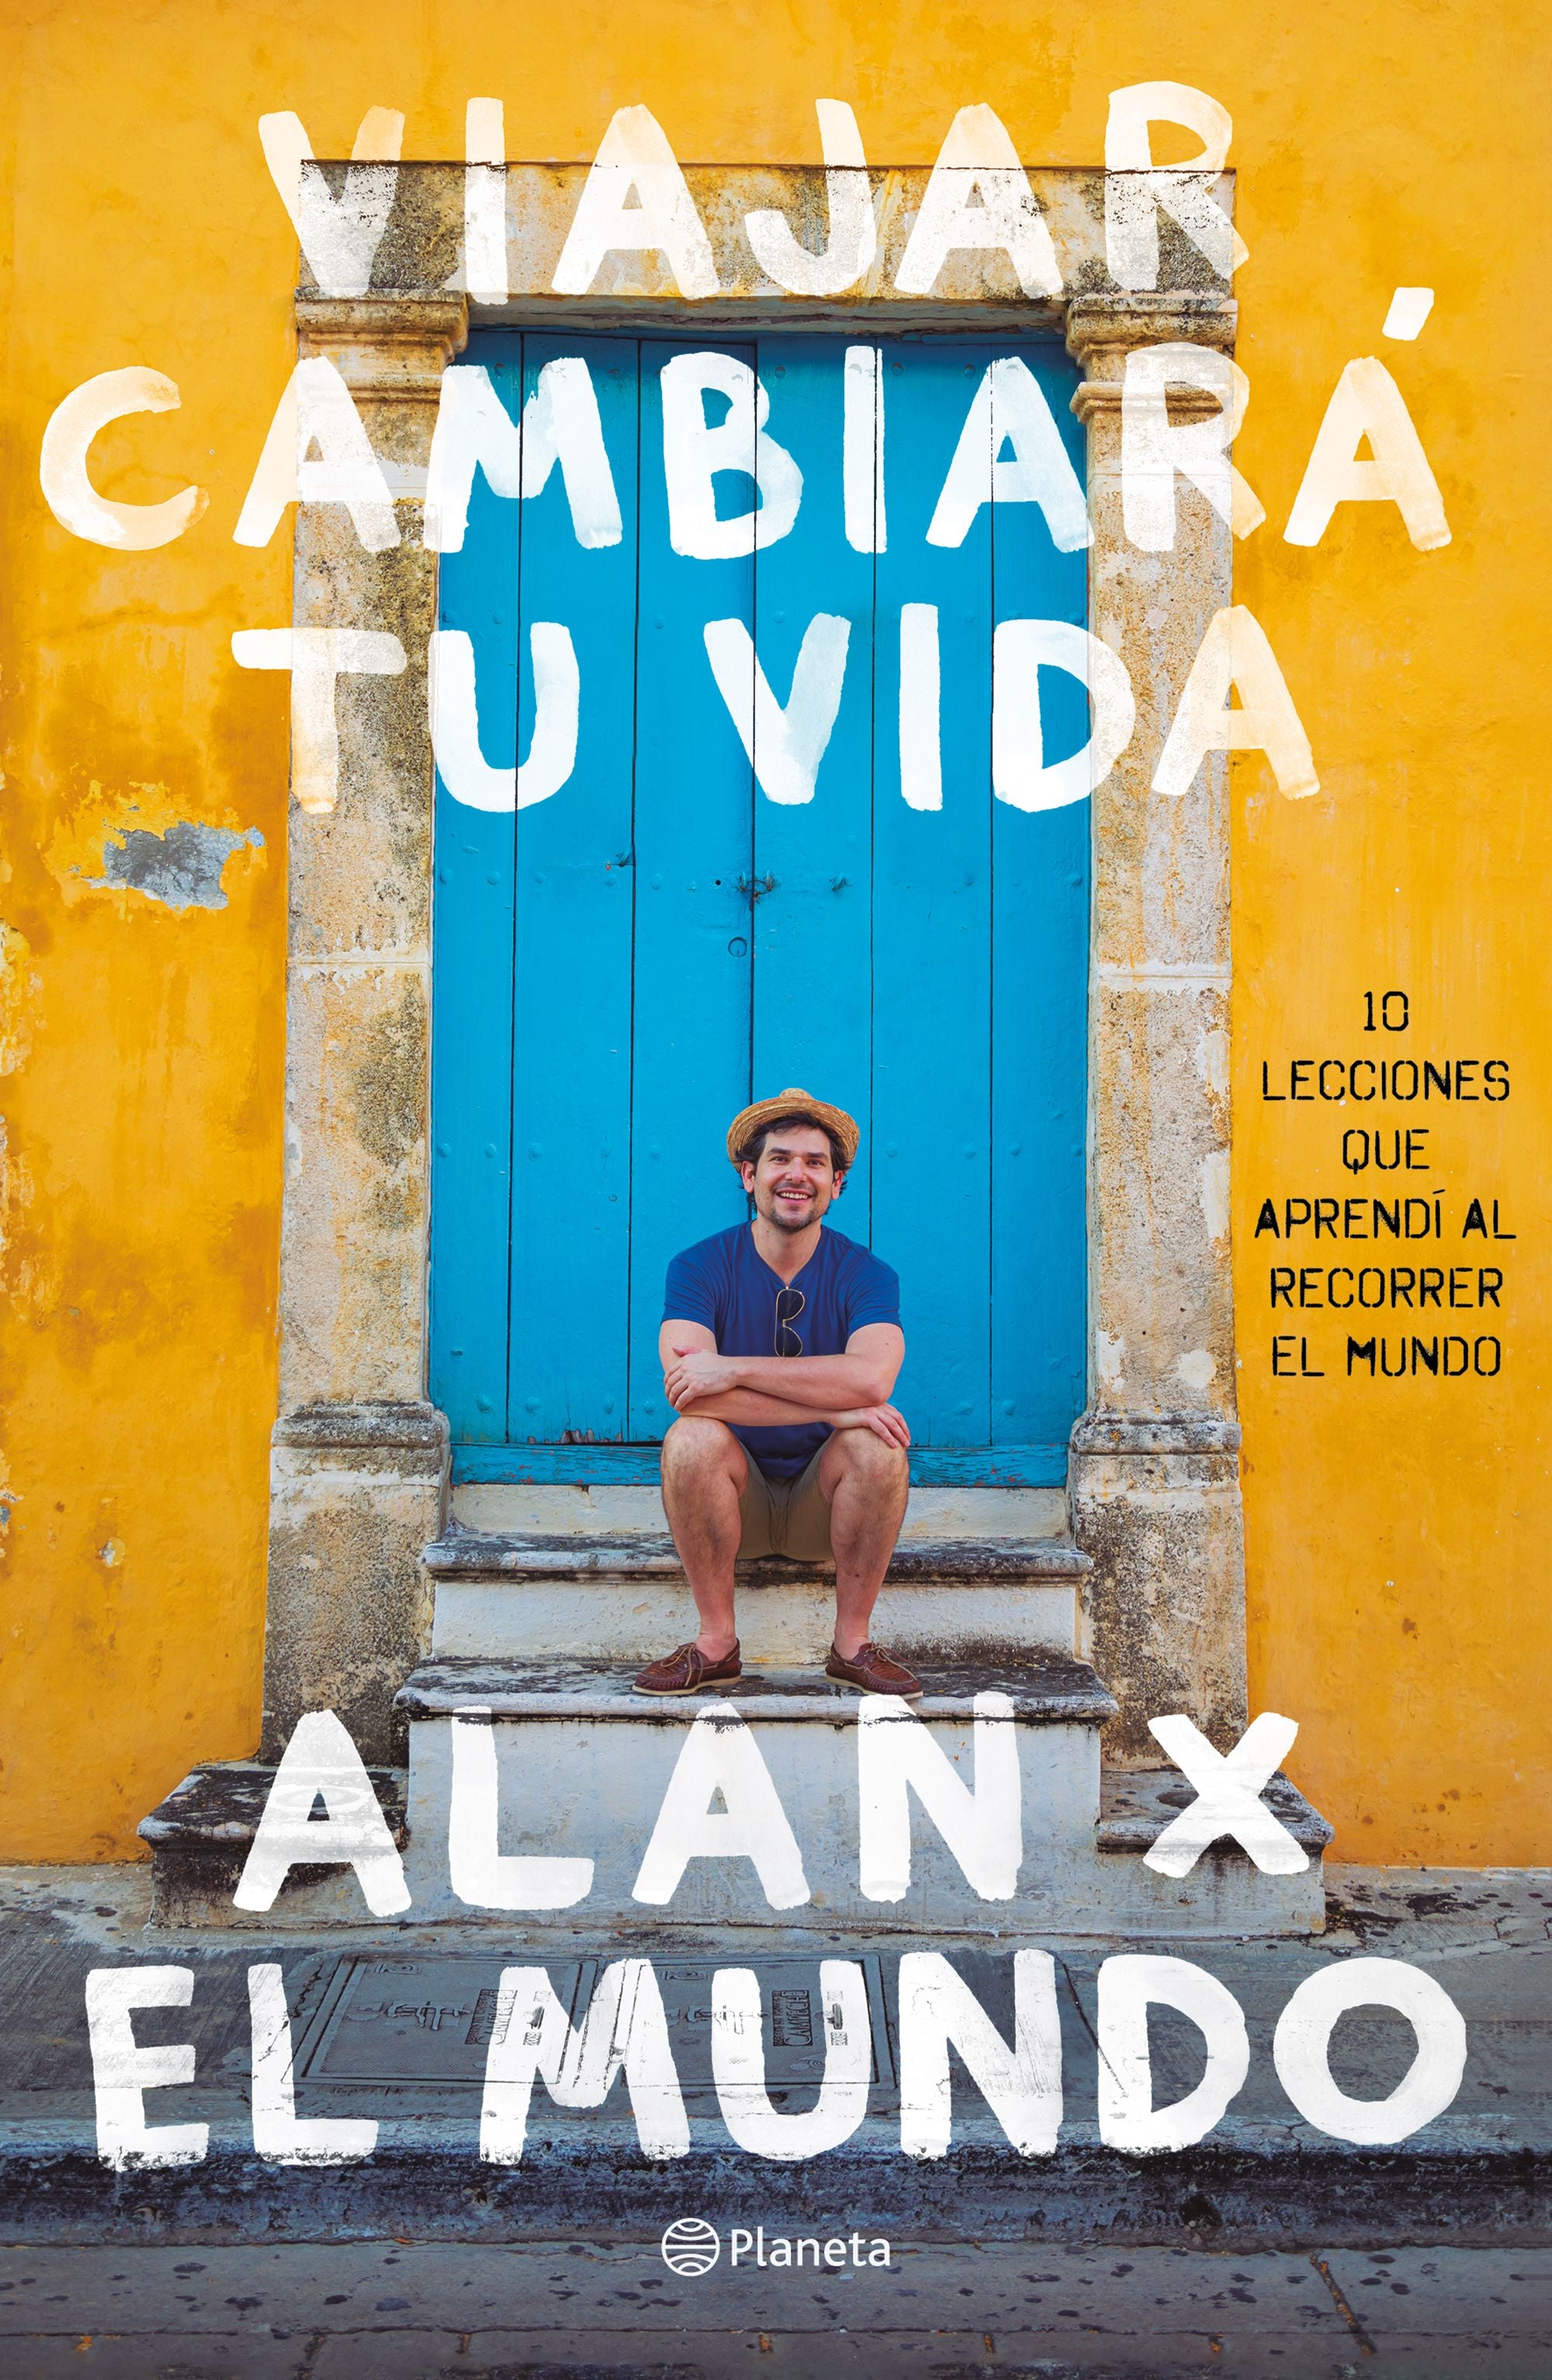 Libro Alan Estrada - Viajar cambiará tu vida